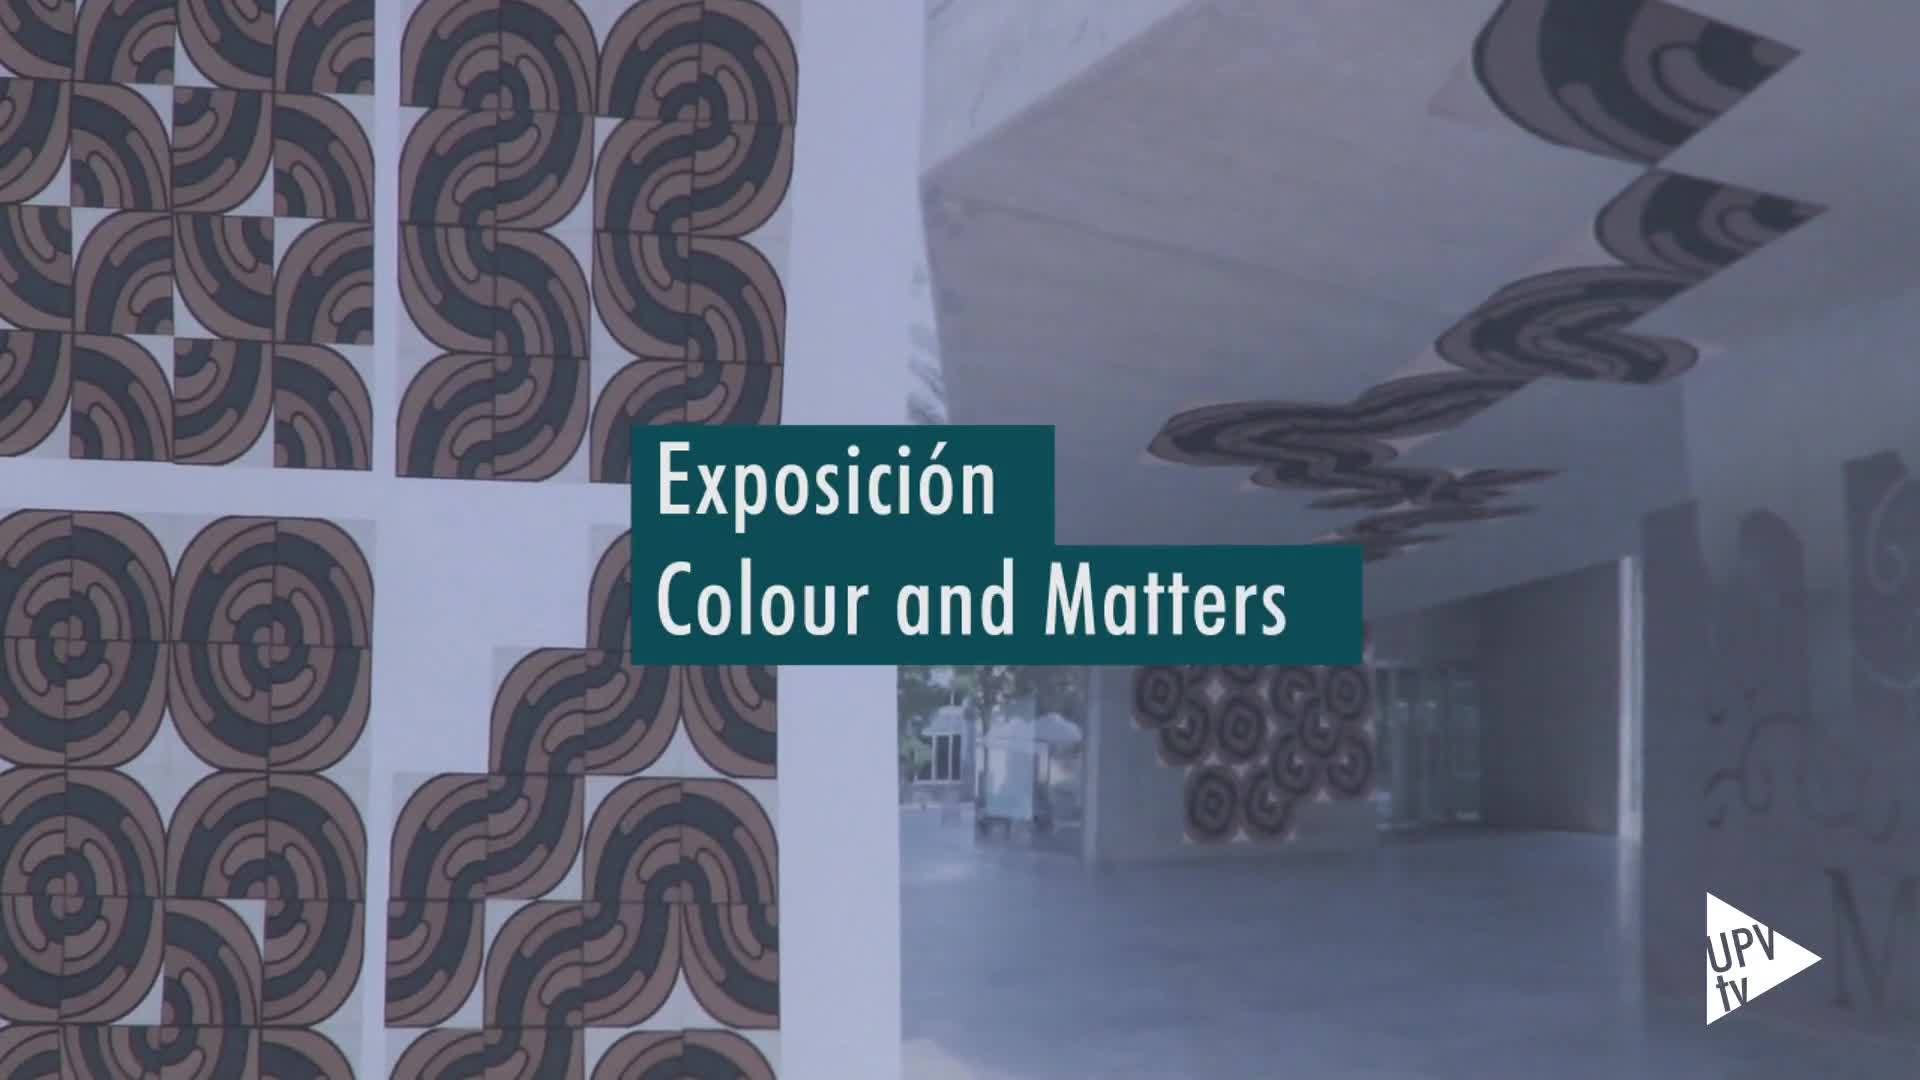 20-01-2020 Exposición Colour and Matters